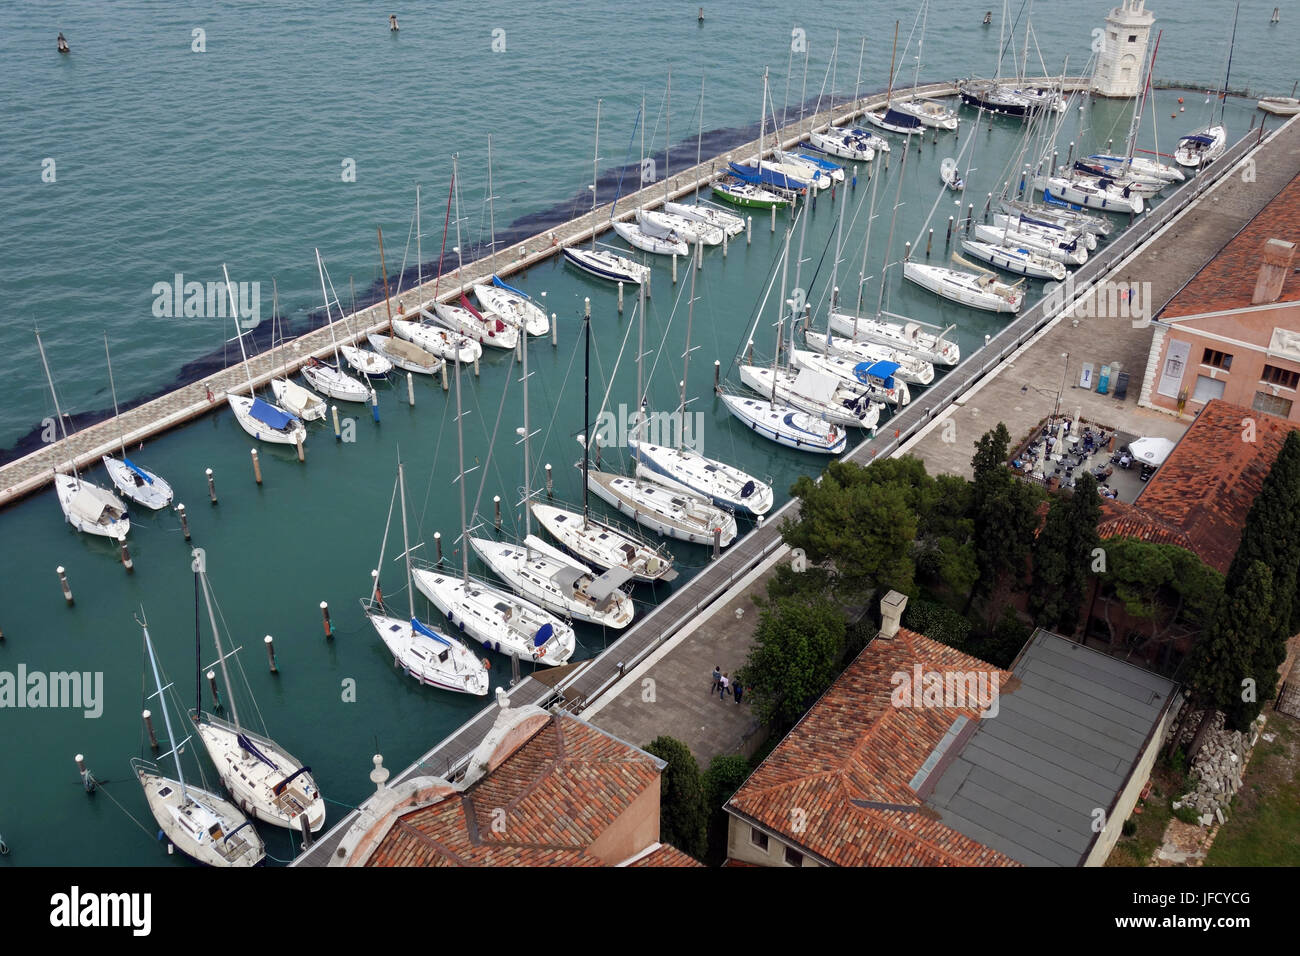 Sailboats at dock, San Giorgio Maggiore island Stock Photo - Alamy